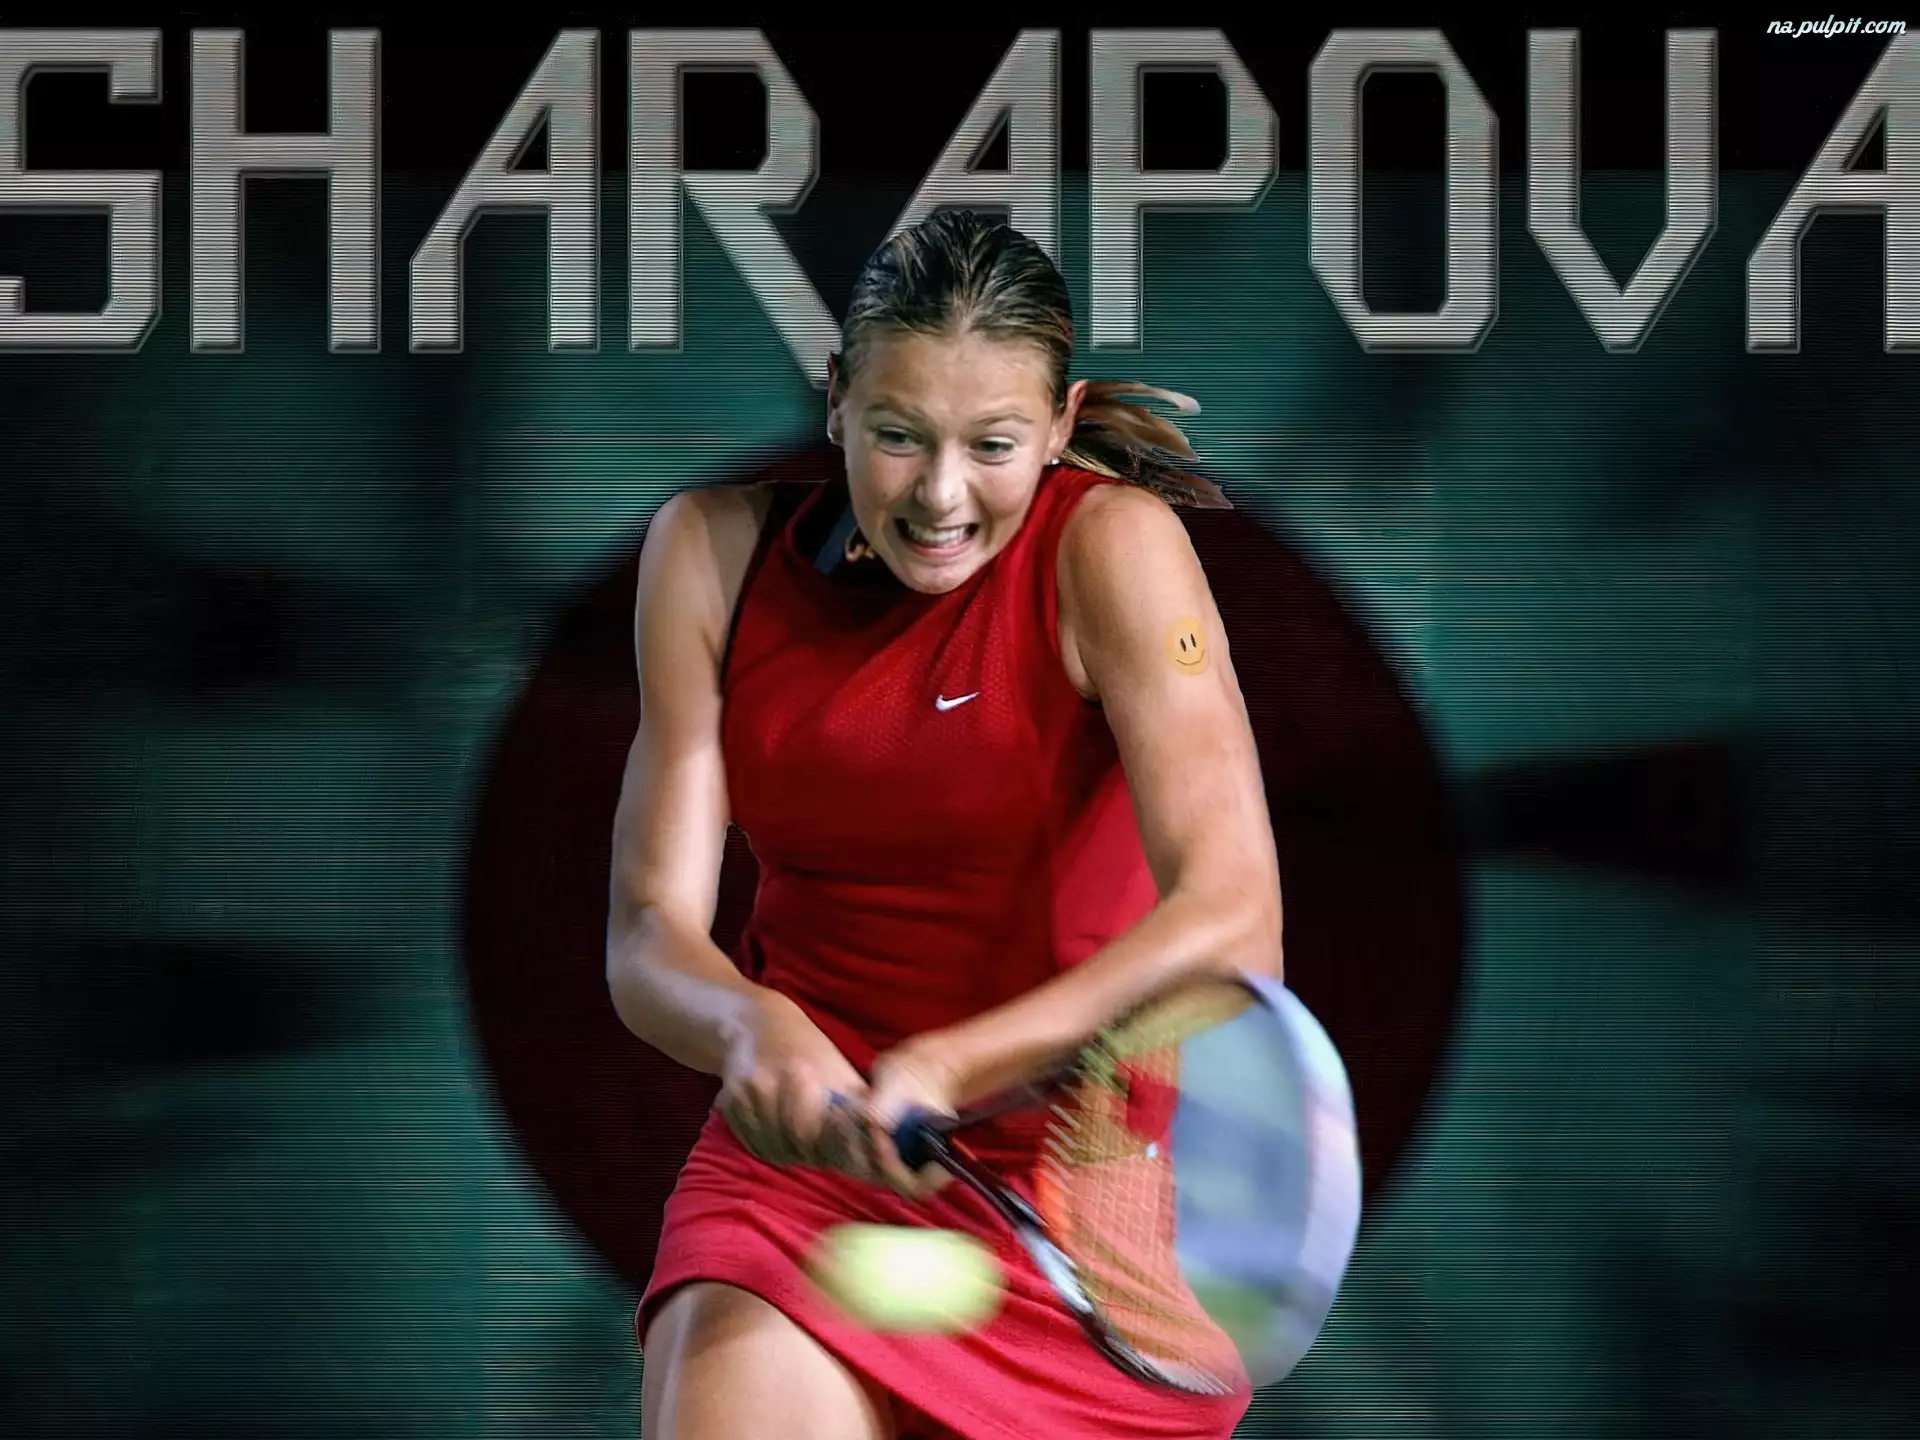 piłka tenisowa, Tennis, Sharapova